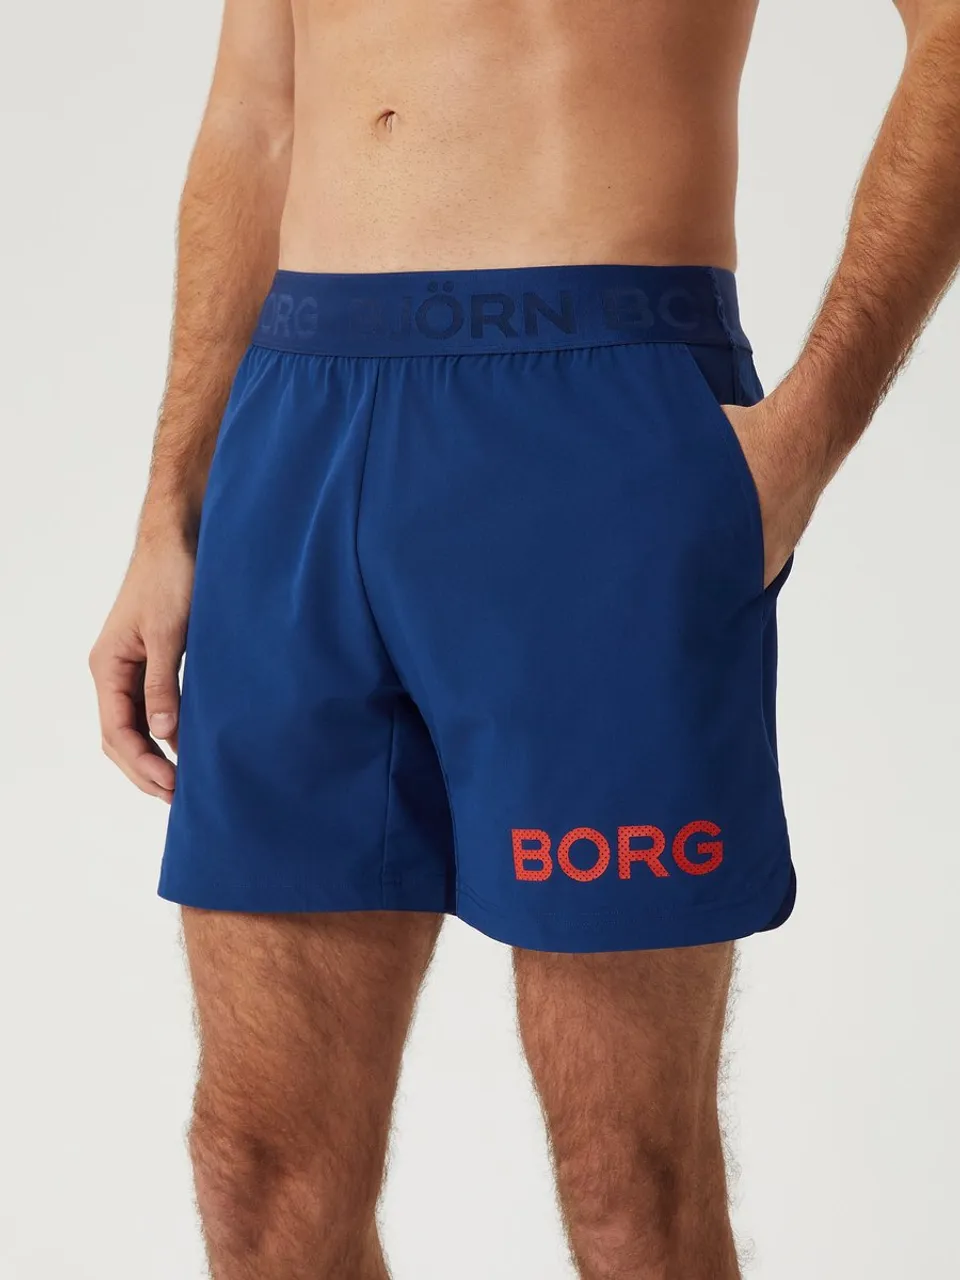 Björn Borg - Shorts - korte broek - Bottom - Heren